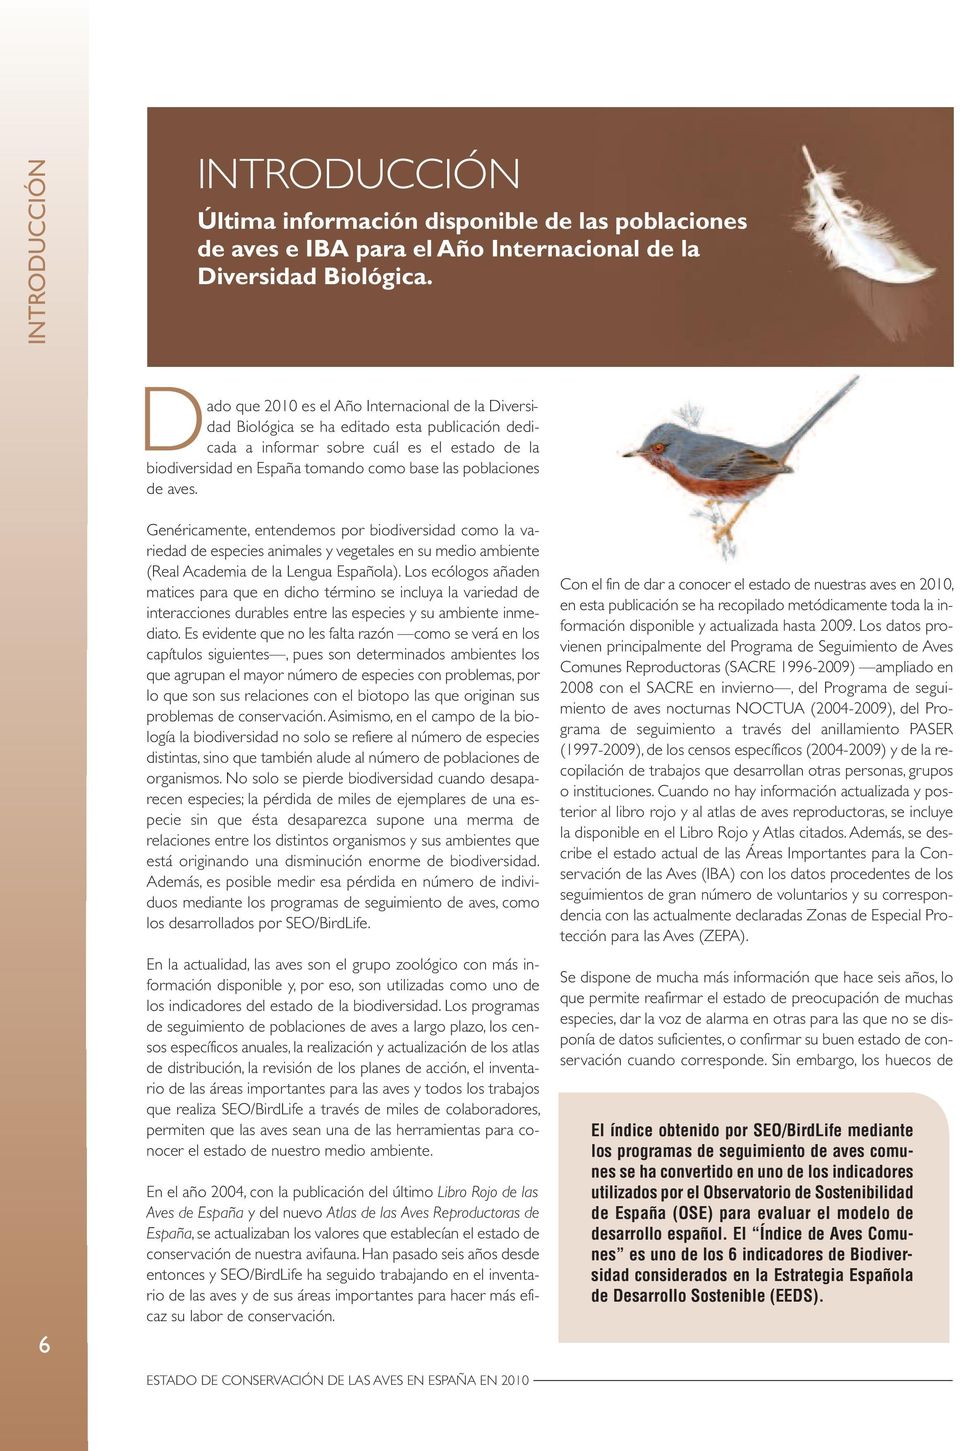 poblaciones de aves. Genéricamente, entendemos por biodiversidad como la variedad de especies animales y vegetales en su medio ambiente (Real Academia de la Lengua Española).